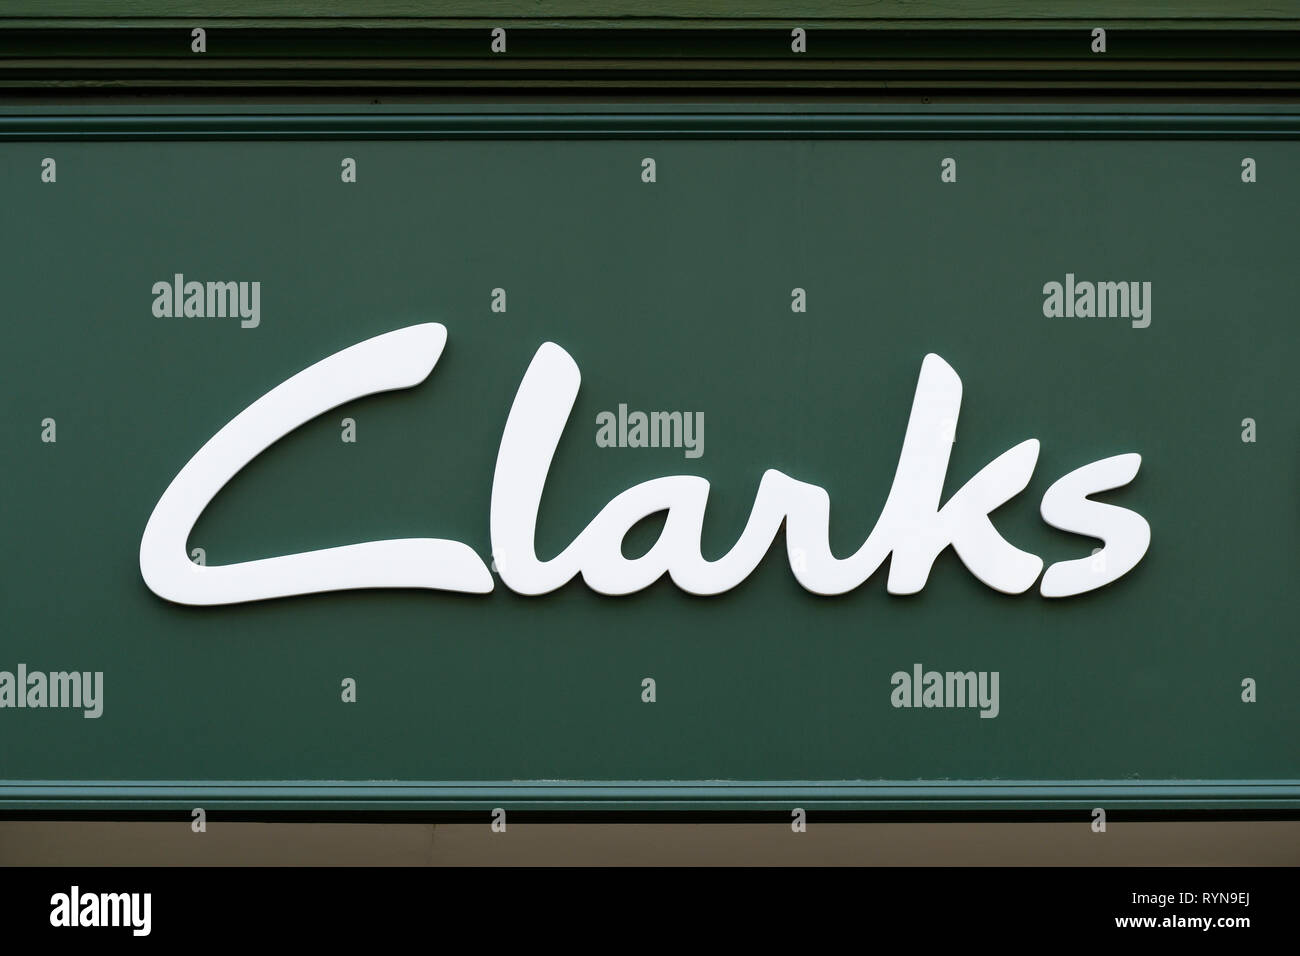 Clarks Shoes Shop Sign, UK Banque D'Images